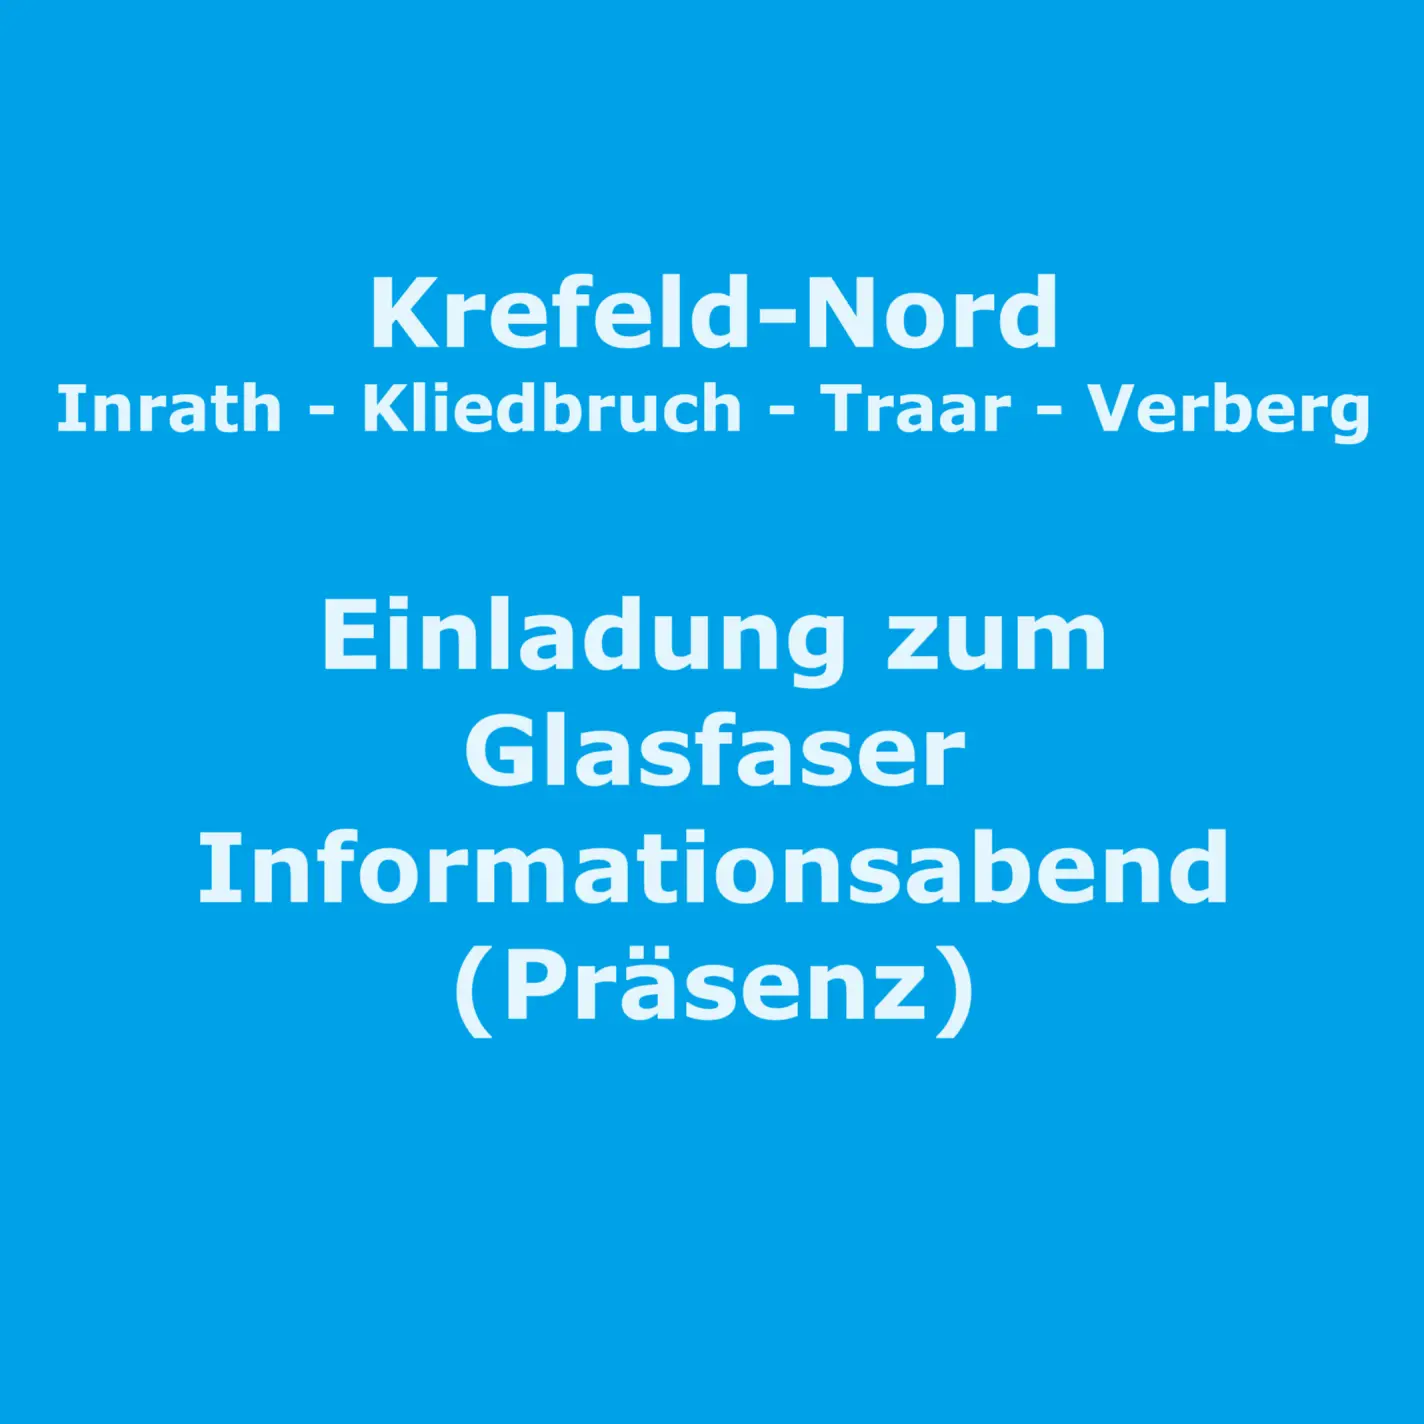 Blaues Bild mit weißer Schrift zum Infoabend in Verberg am 24.4. um 19 Uhr